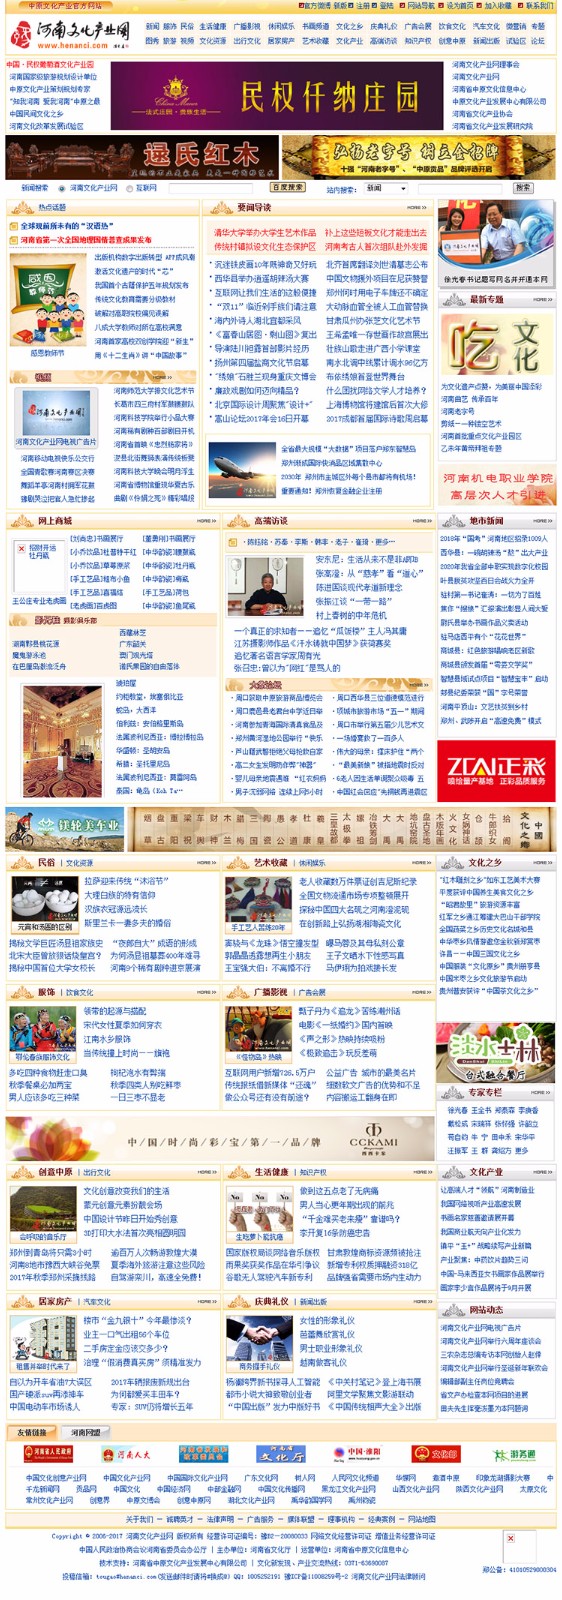 河南文化产业网--中原文化专业媒体--河南省重点文化新闻门户.jpg